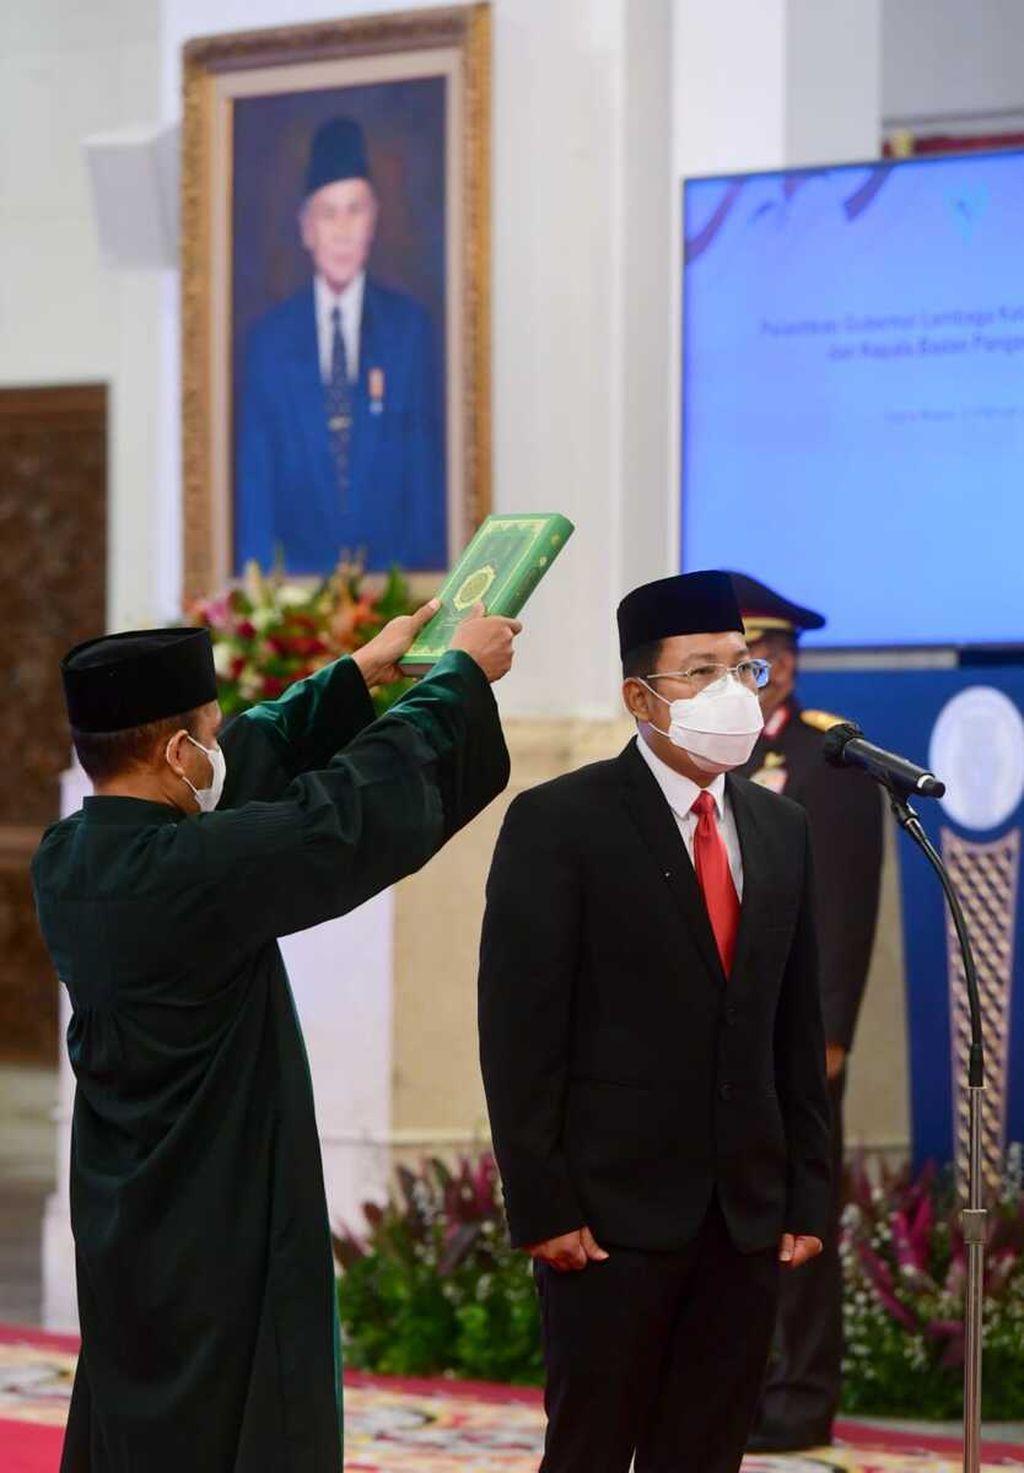 Arief Prasetyo Adi dilantik sebagai Kepala Badan Pangan Nasional berdasarkan Keputusan Presiden Republik Indonesia Nomor 7/M Tahun 2022 tentang Pengangkatan Kepala Badan Pangan Nasional di Istana Negara, Jakarta, Senin, 21 Februari 2022.